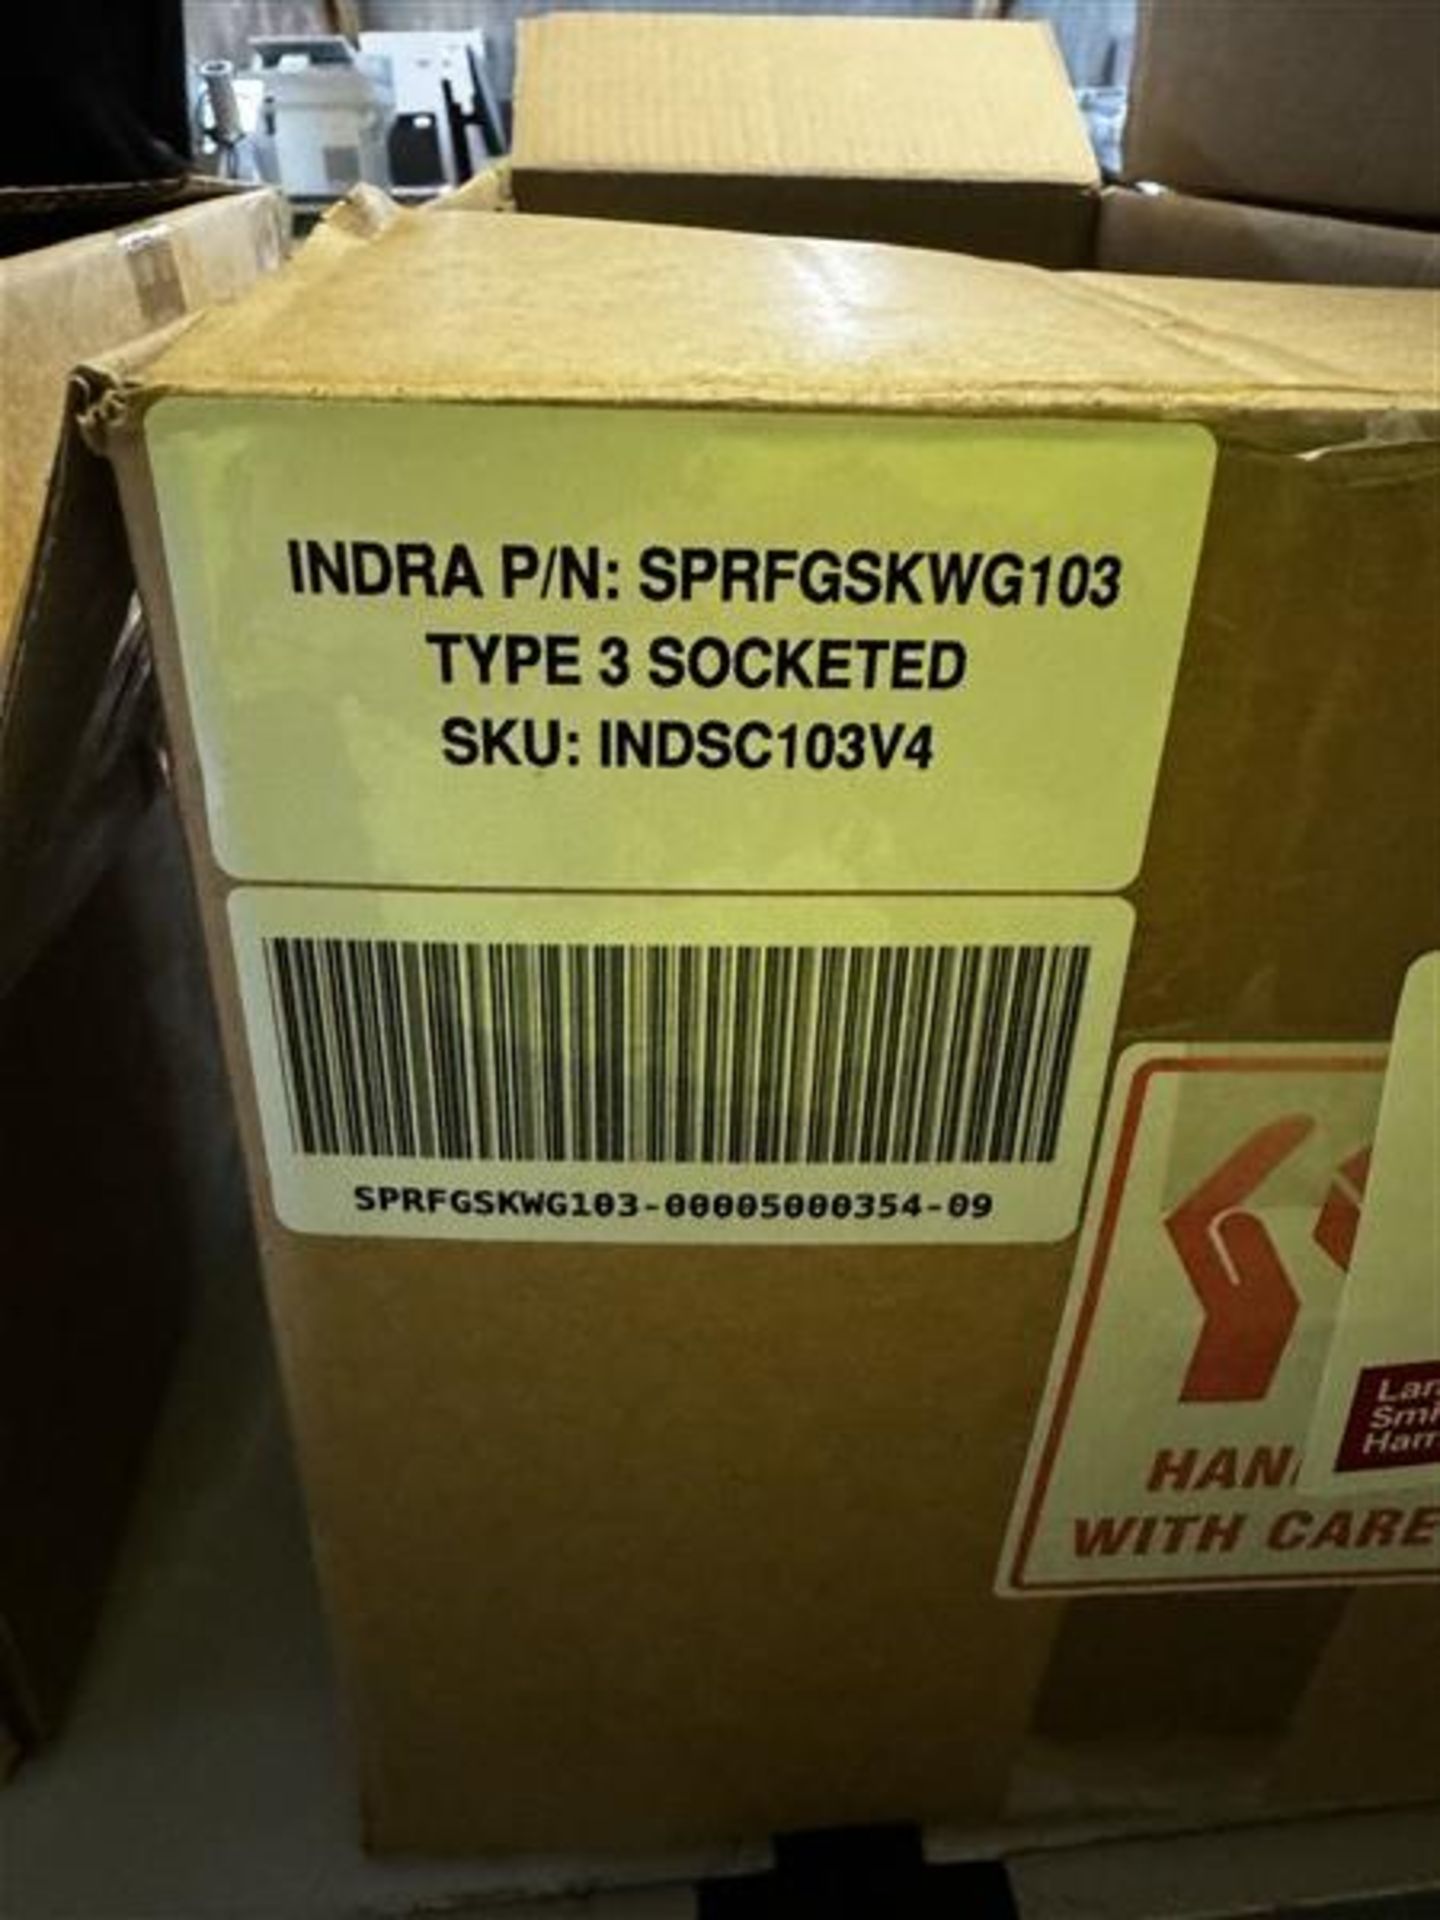 Indra Type 3 socketed electric car charger, part no. SPRFGSKWG103, SKU: INDSC103V4 - Image 2 of 3